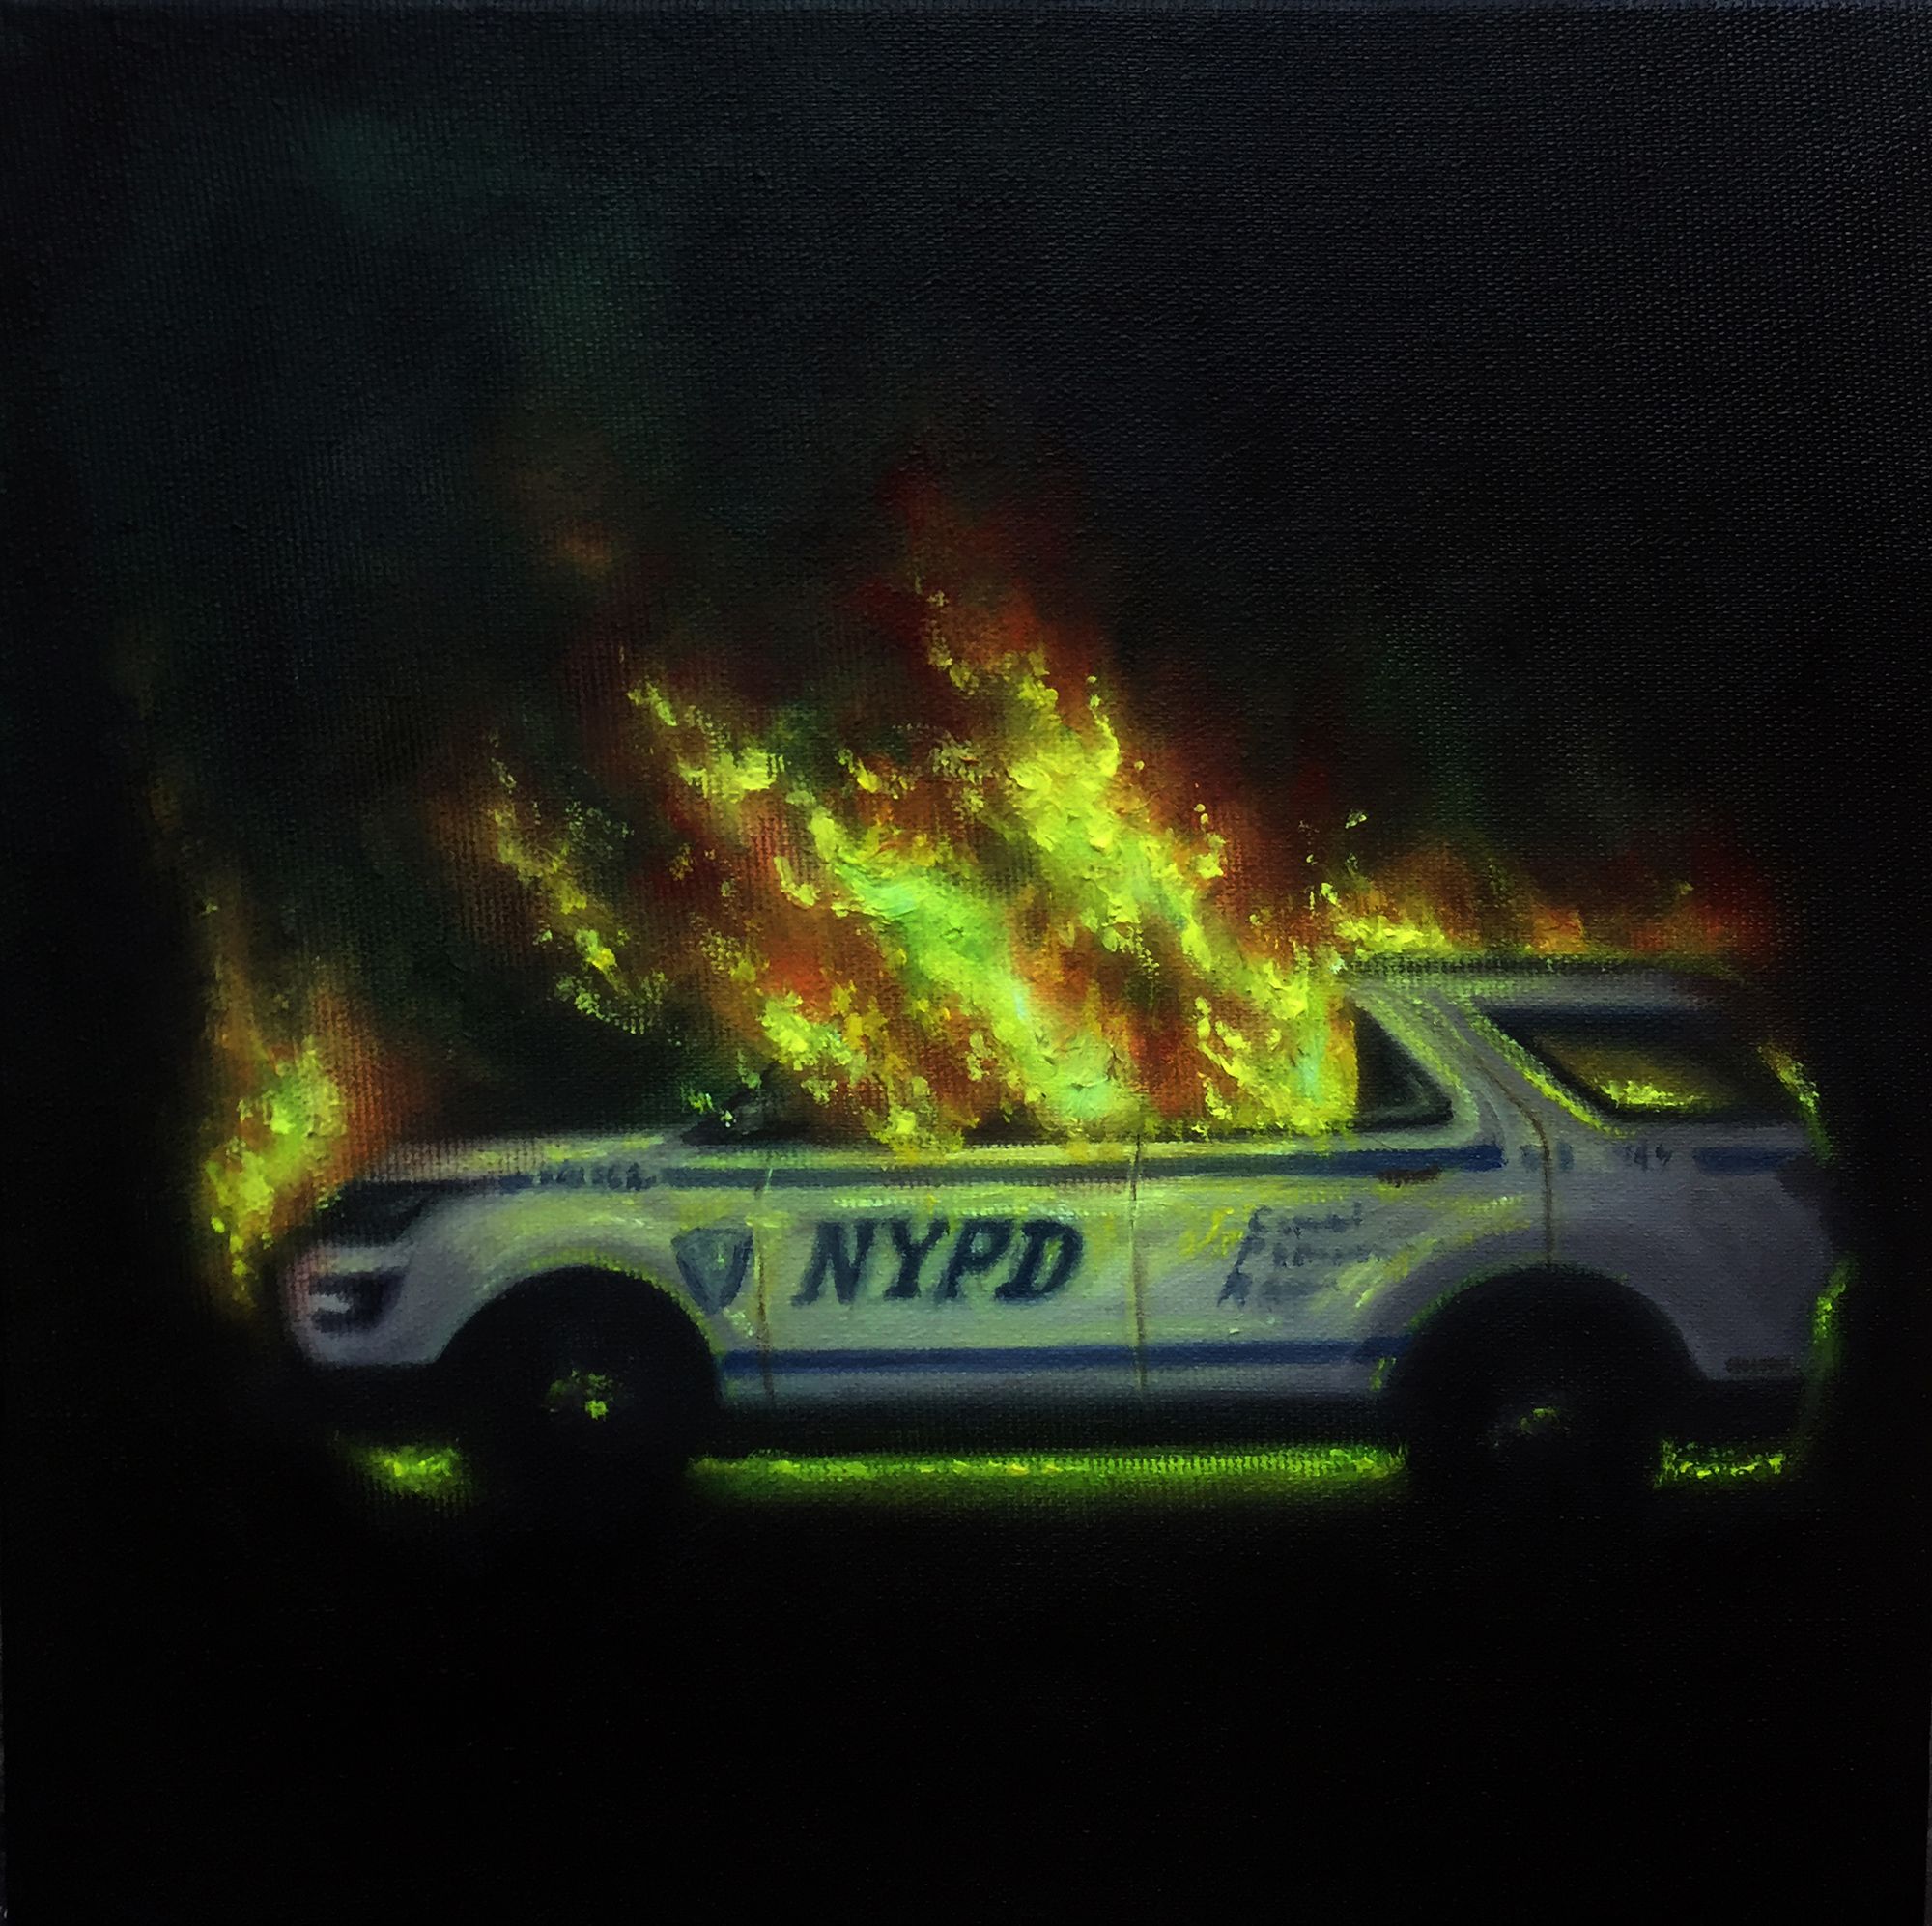 A pintura mostra a imagem de um carro policial incendiado, sobre fundo preto a luz emana do fogo, o carro é de cor azul e branco, pode se ler as siglas NYPD na porta do carro, a pintura faz alusão às manifestações e protestos populares em diversos lugares do mundo.